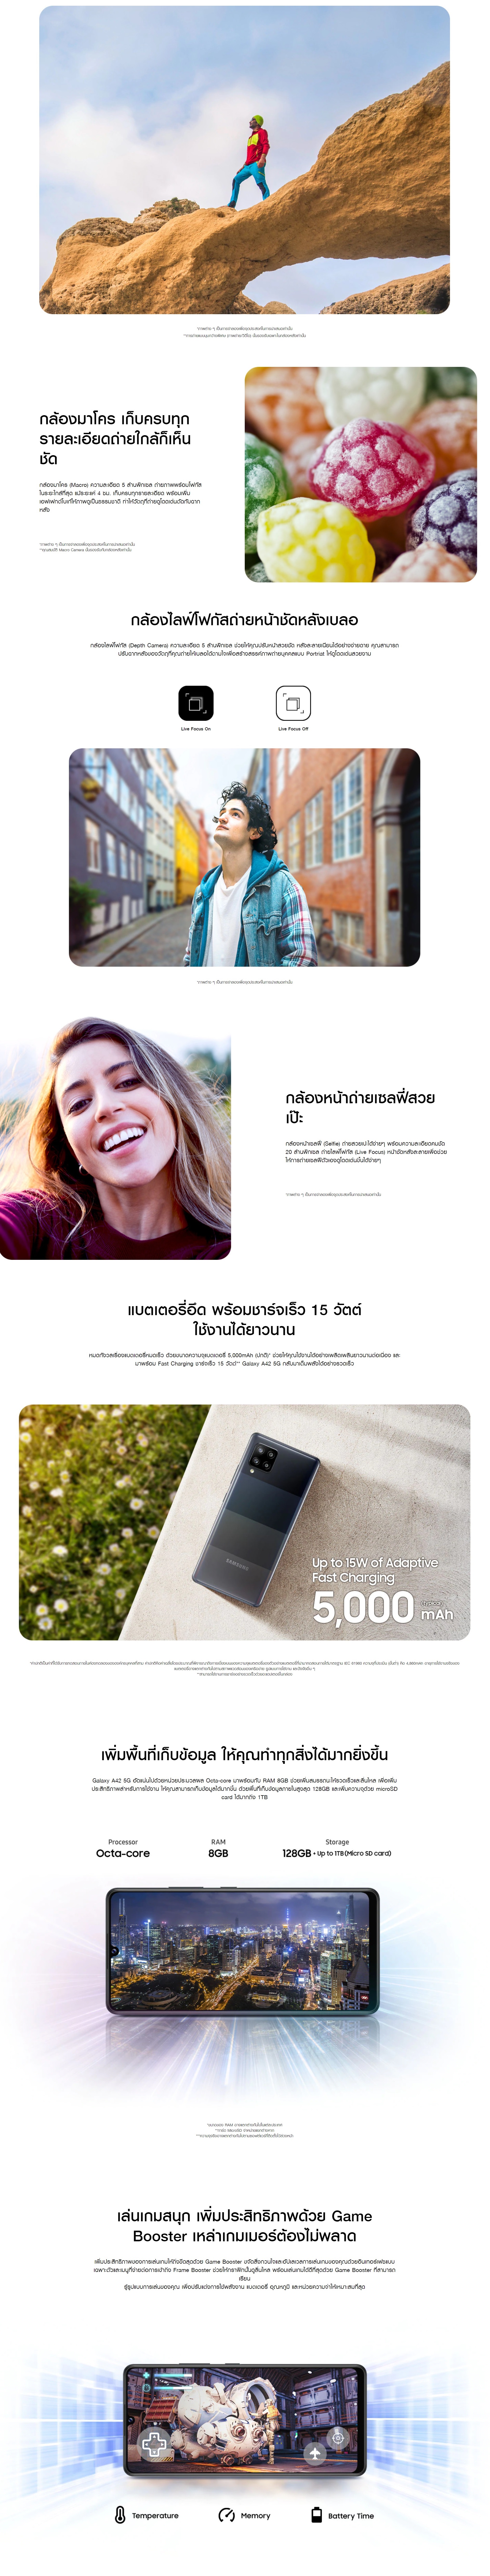 รูปภาพของ Samsung Galaxy A42 5G Ram8/128gb(เครื่องใหม่มือ1,ศูนย์ไทย เคลียสตอค ประกันร้าน 3 เดือน)จอ Super AMOLED กว้าง 6.6 นิ้ว แบตเตอรี่ 5000 mAh มาพร้อมชิปเซ็ต Snapdragon 750G